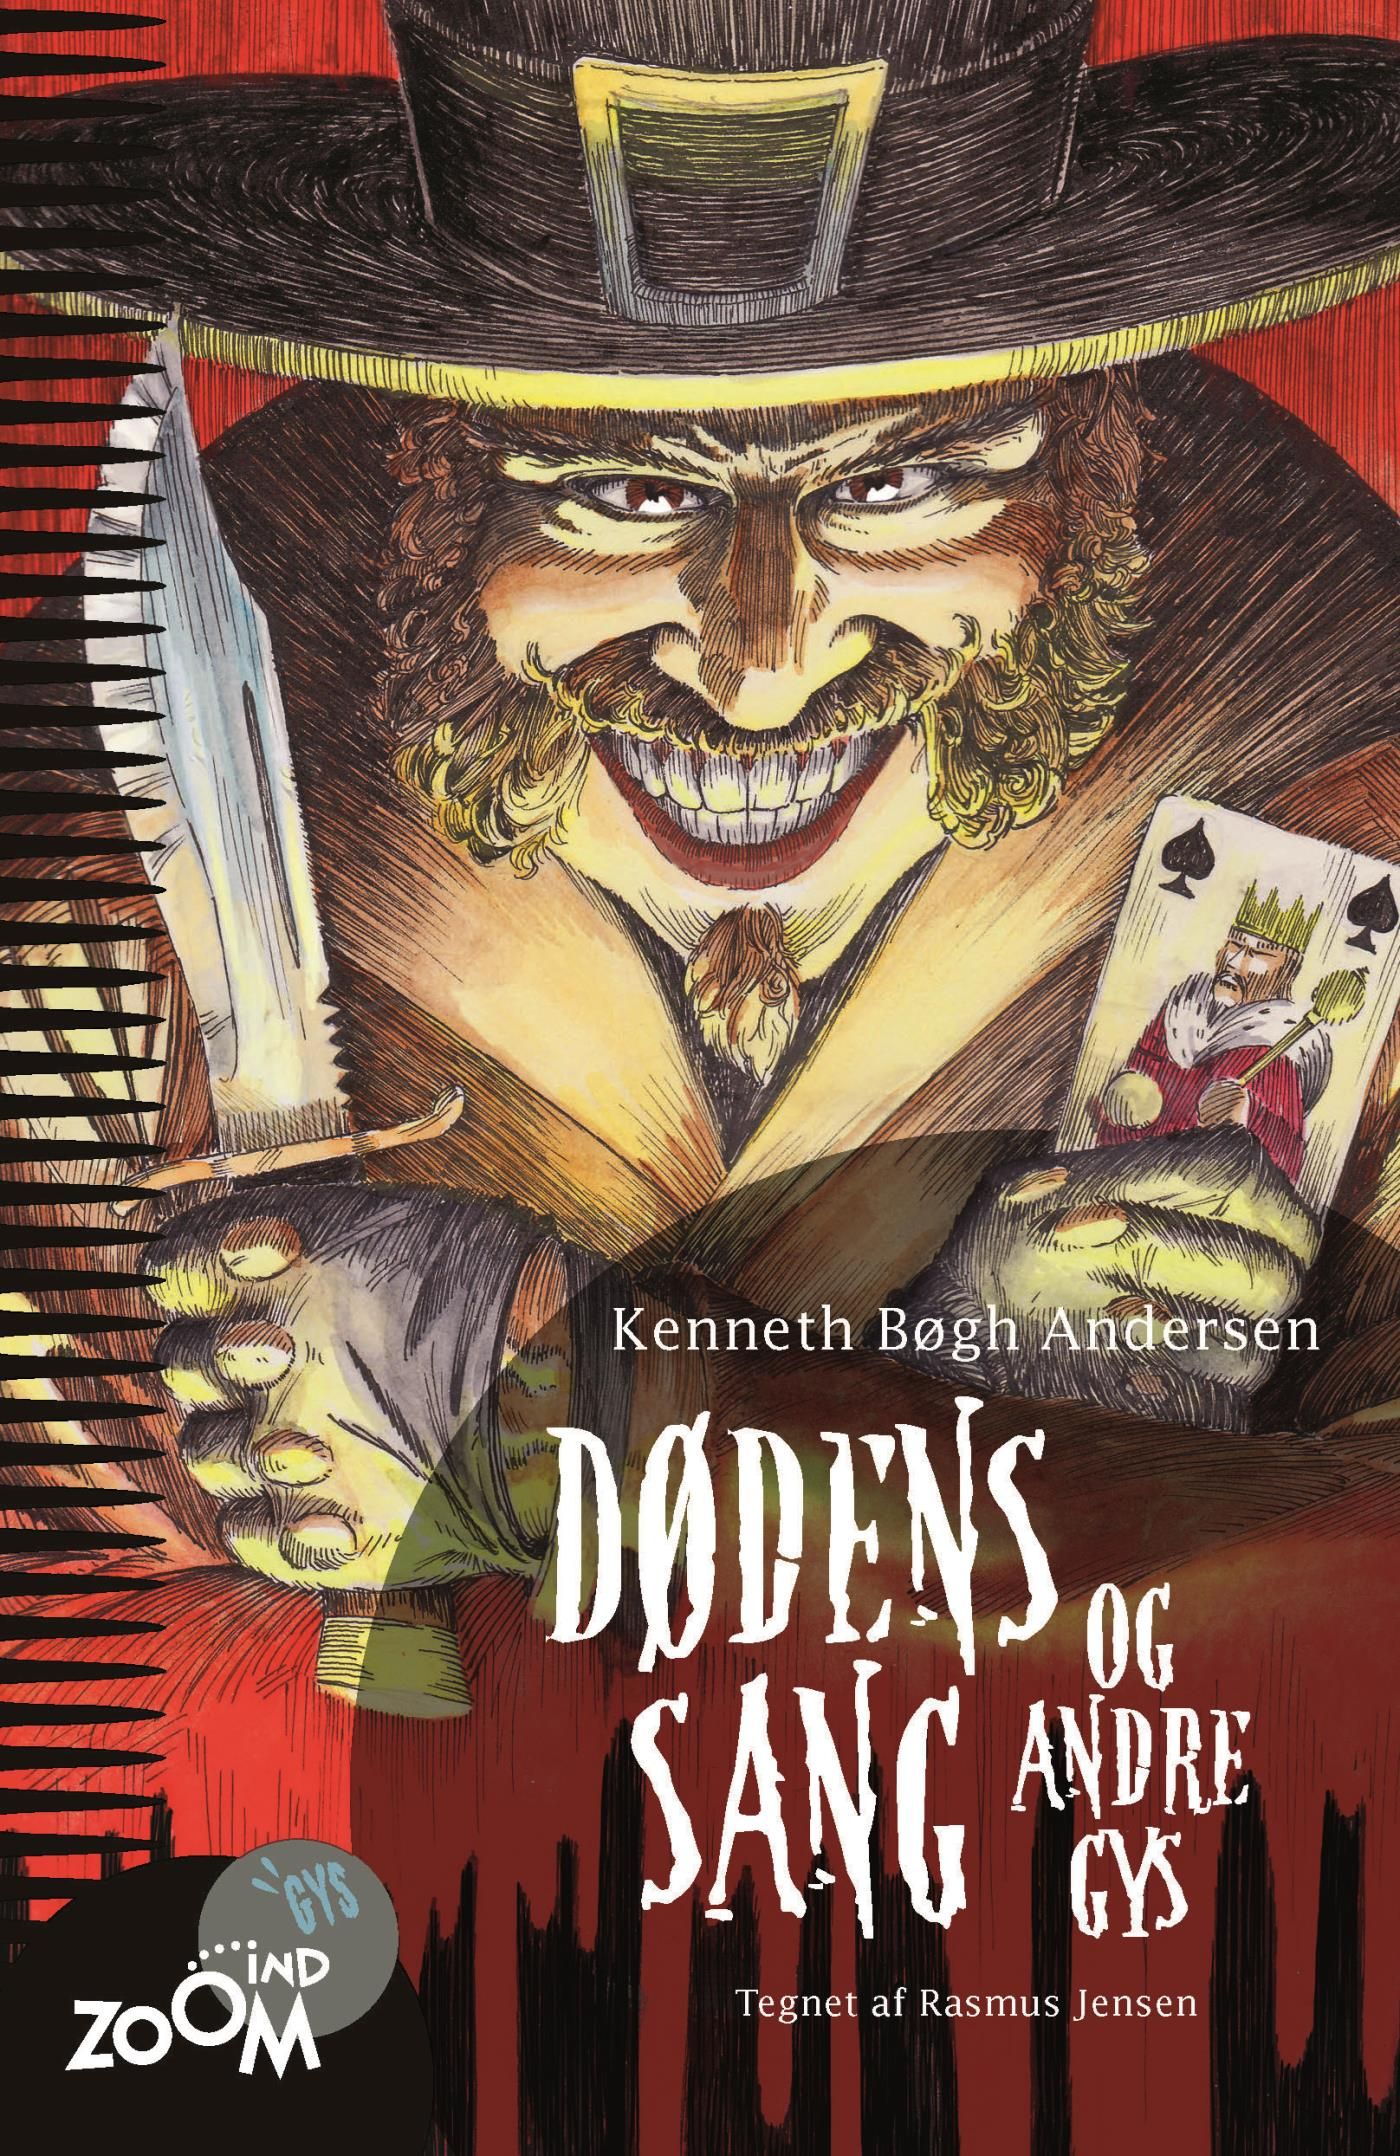 Dødens sang - og andre gys, e-bog af Kenneth Bøgh Andersen